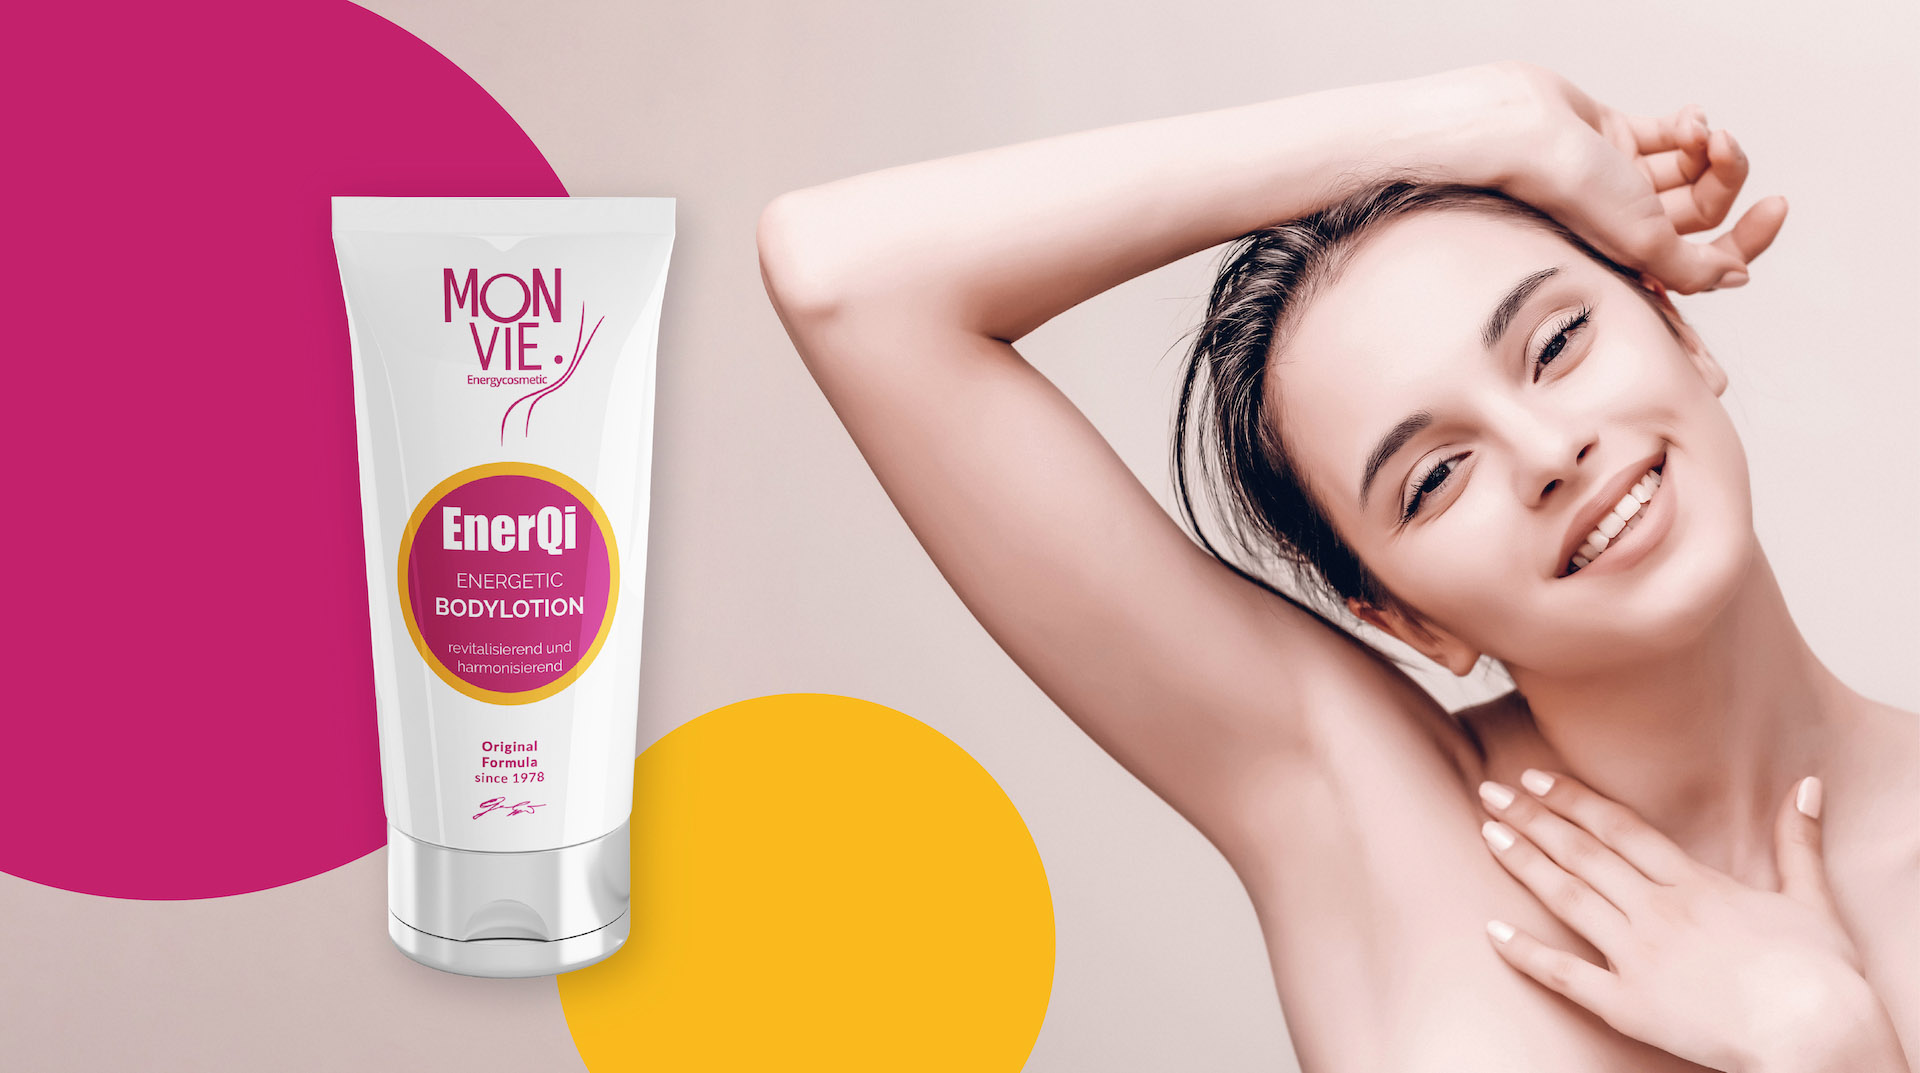 Monvie EnerQi Energiekosmetik - energetische Creme für eine gesunde und basische Haut - Banner für Bodylotion - revitalisierend und straffend mit einer jungen Frau